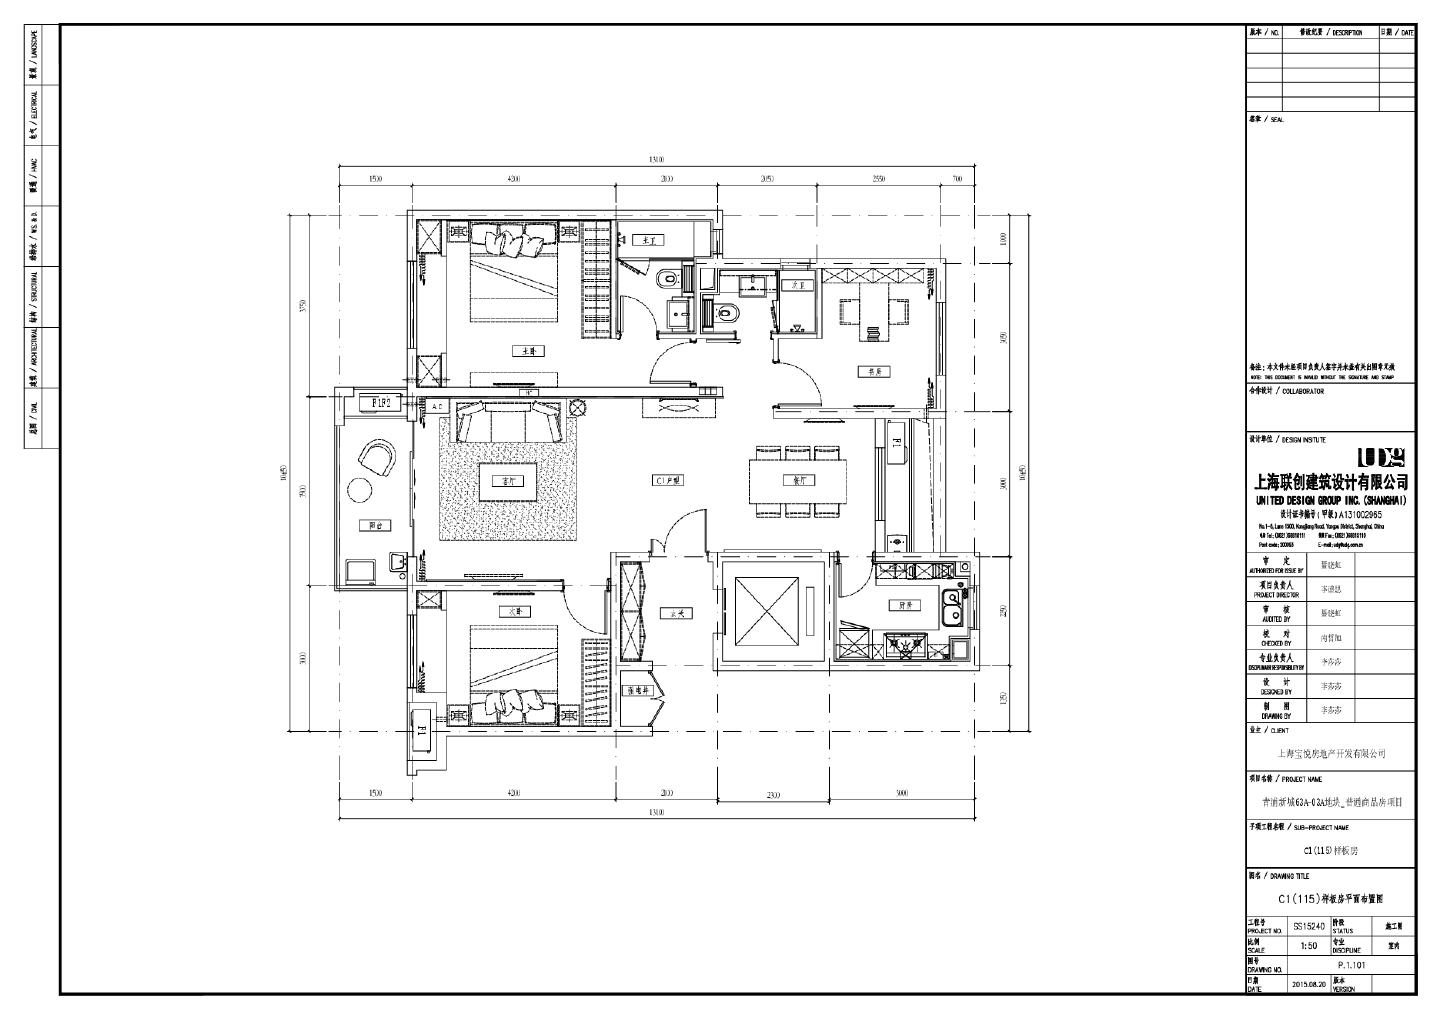 青浦新城63A-03A地块_普通商品房项目-C1(115)样板房平面布置CAD图